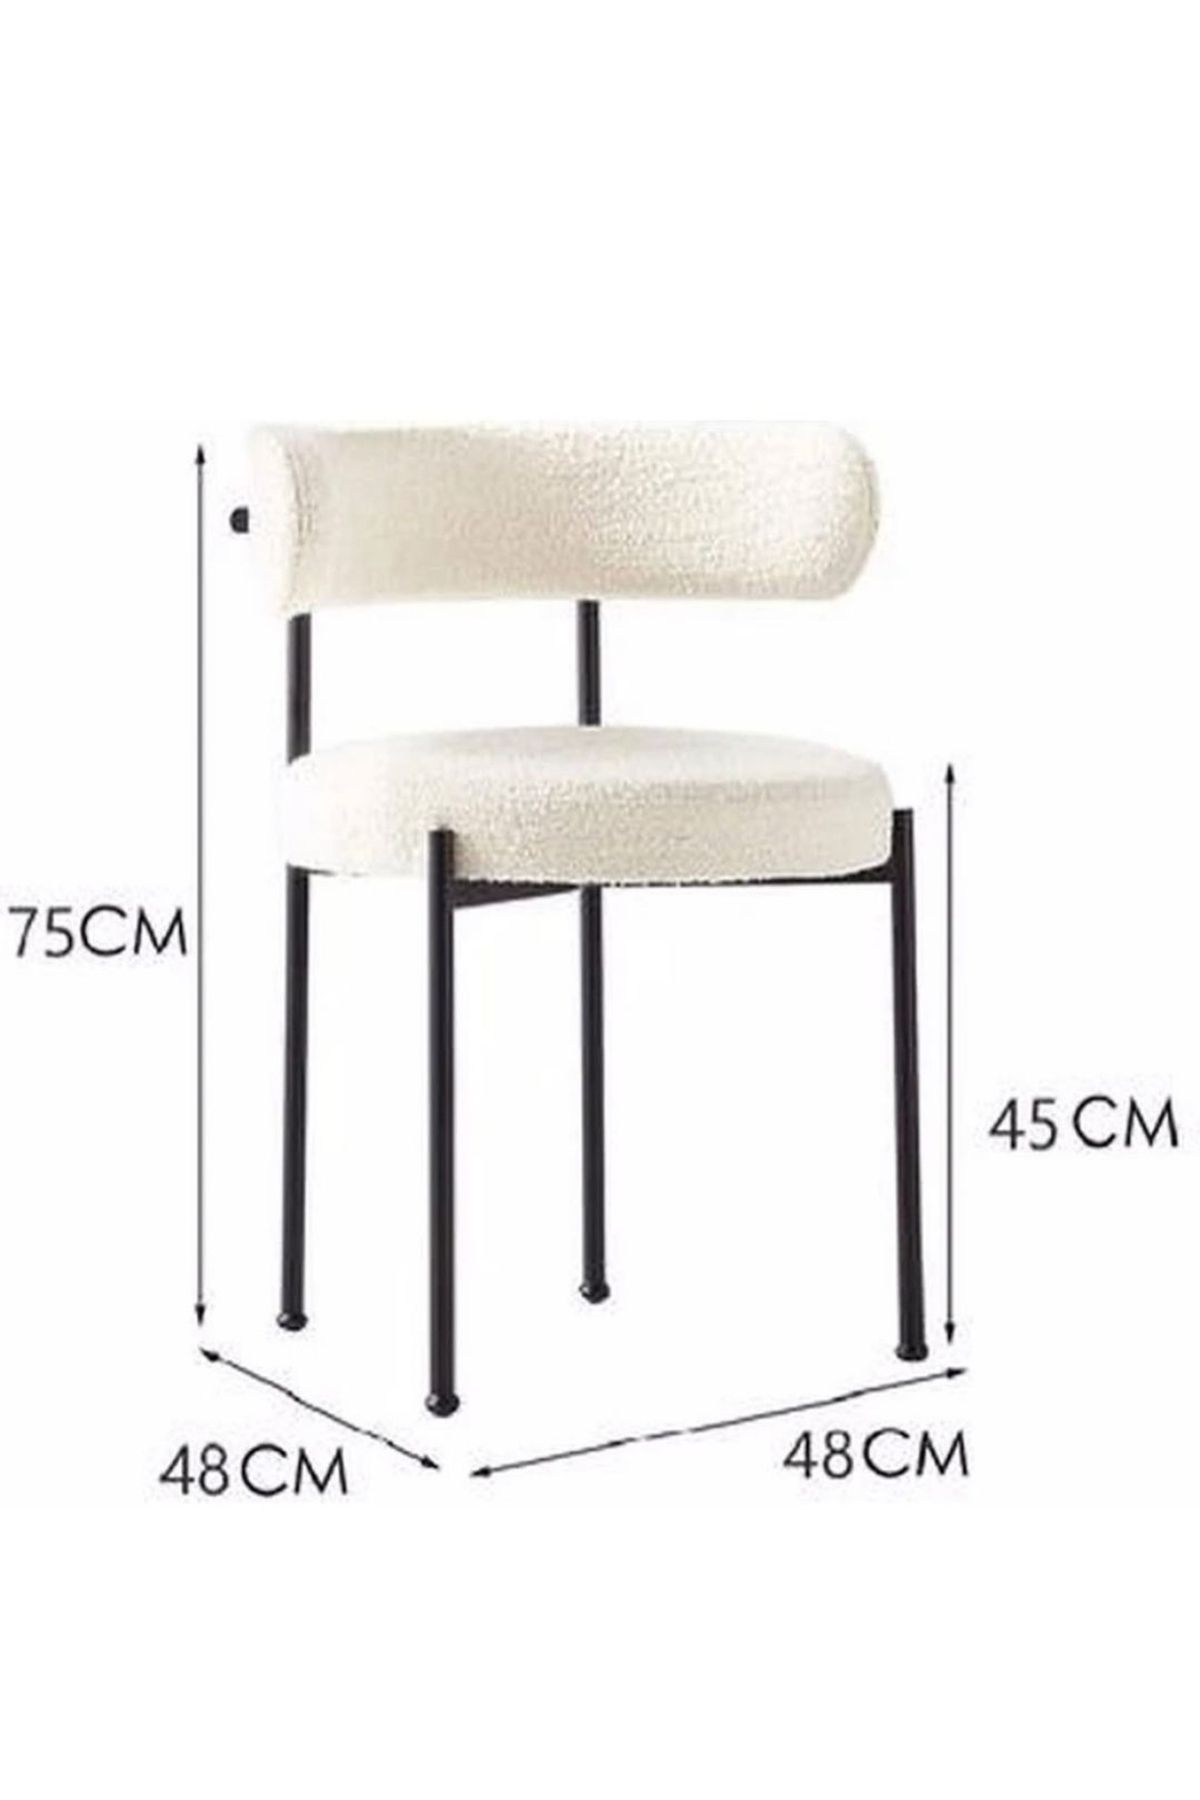 numan metal Teddy sandalye cafe sandalye mutfak sandalyesi ofis sandalyesi salon sandalyesi masa sandalye